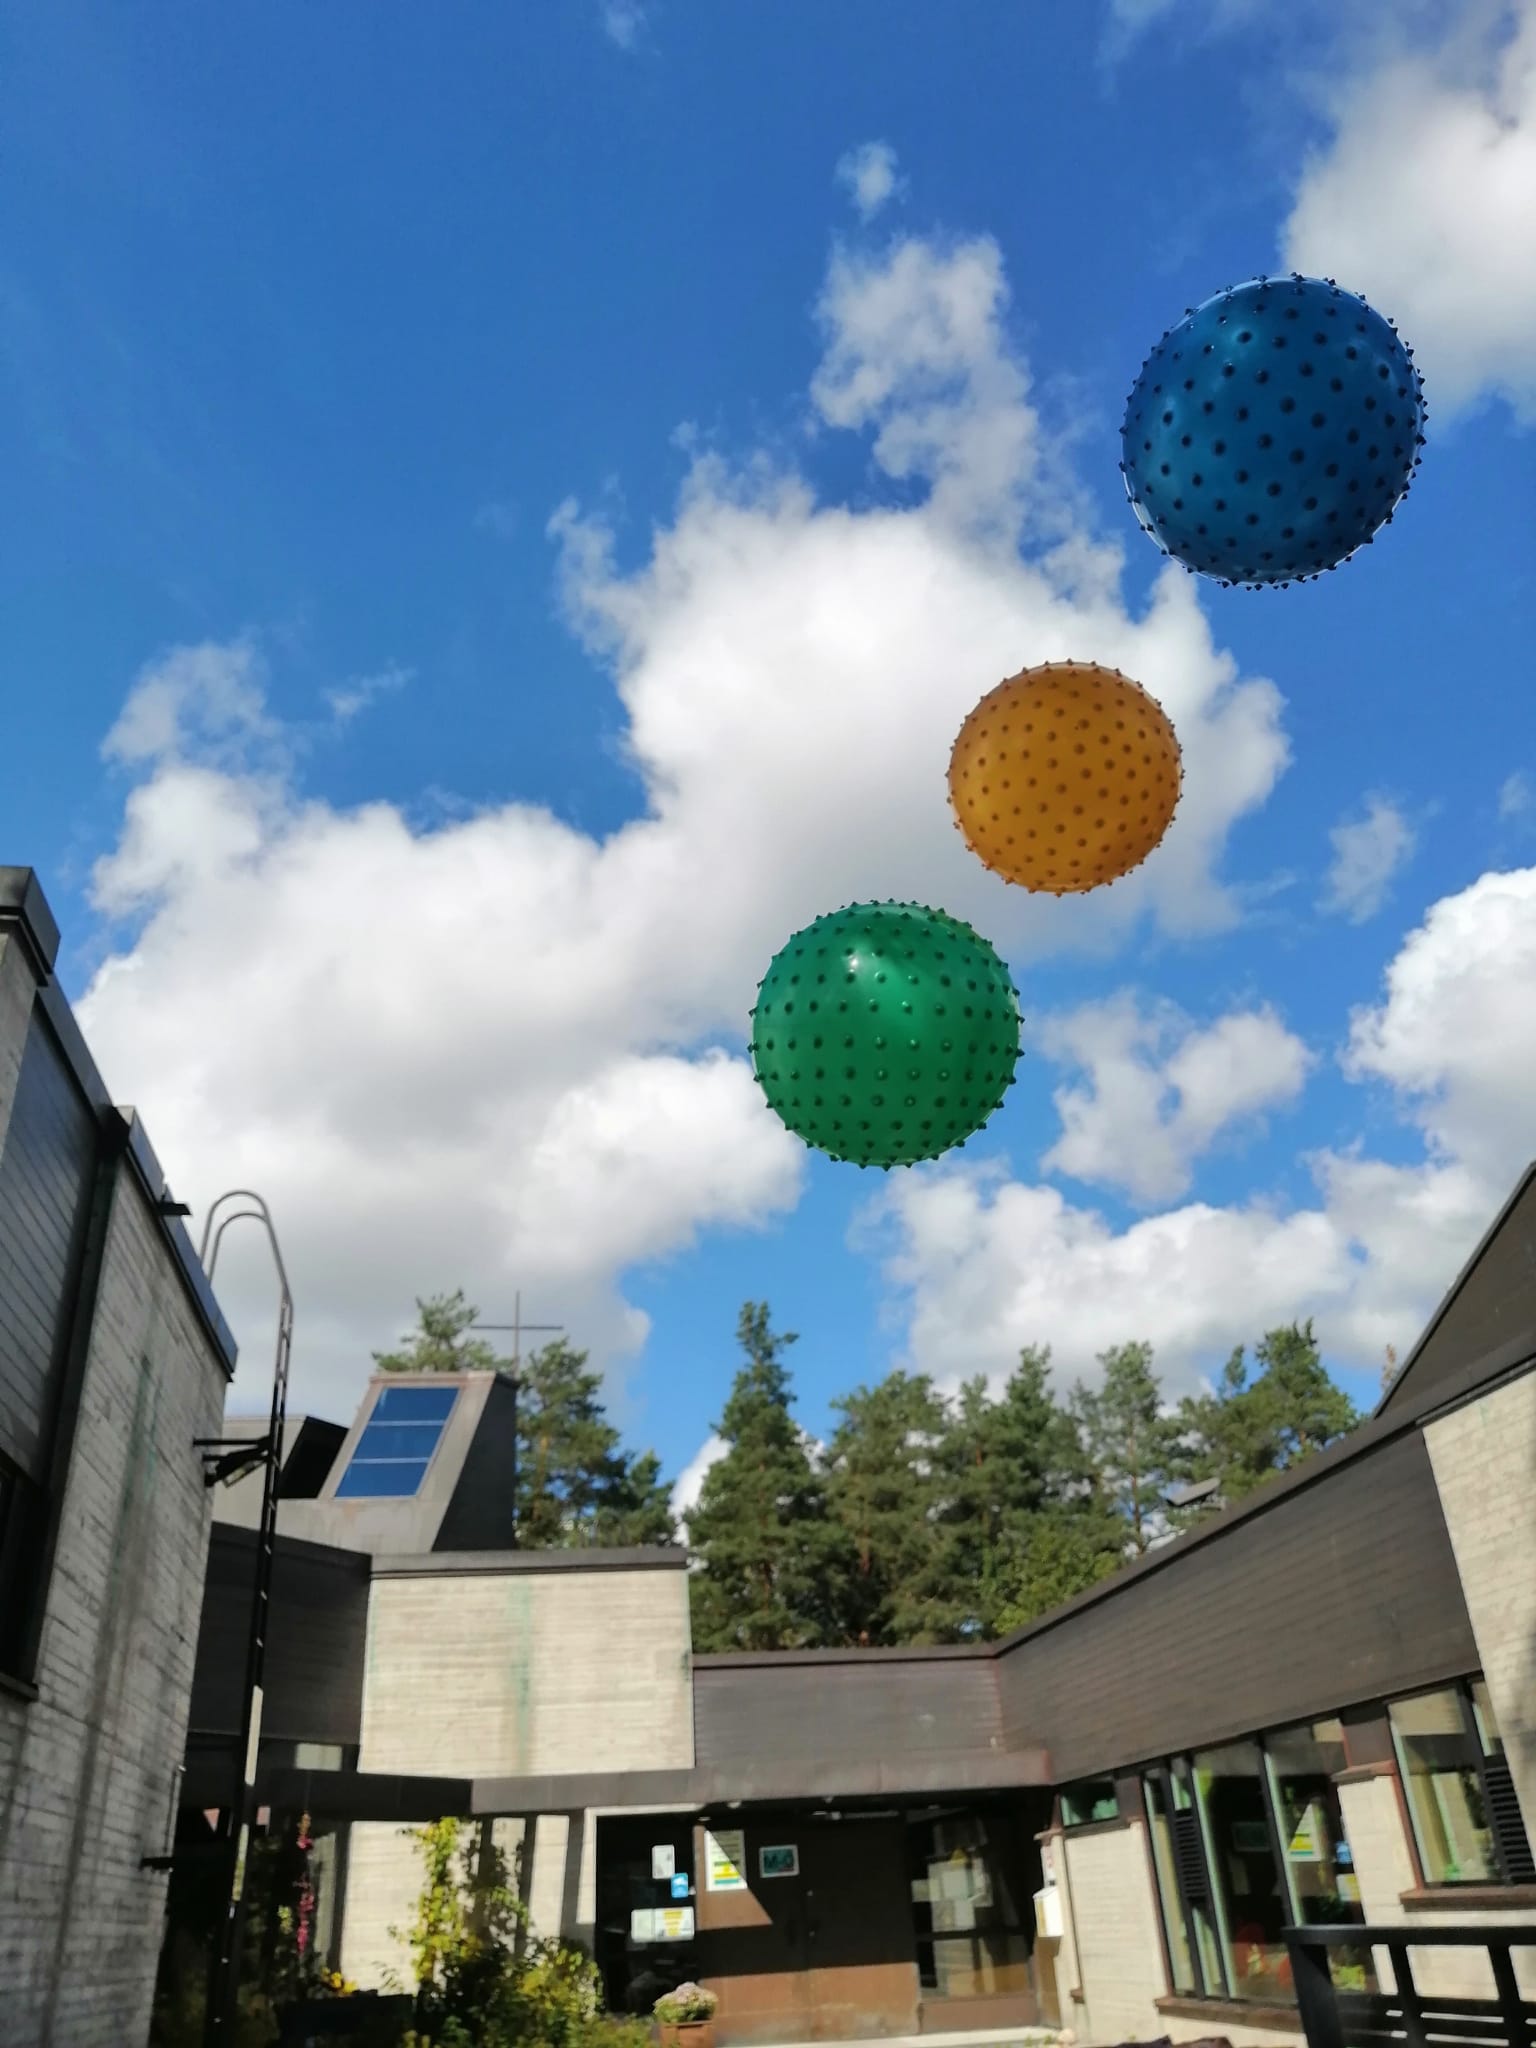 Kolme eri väristä palloa lentää ilmassa, taustalla Espoonlahden kirkkoa.